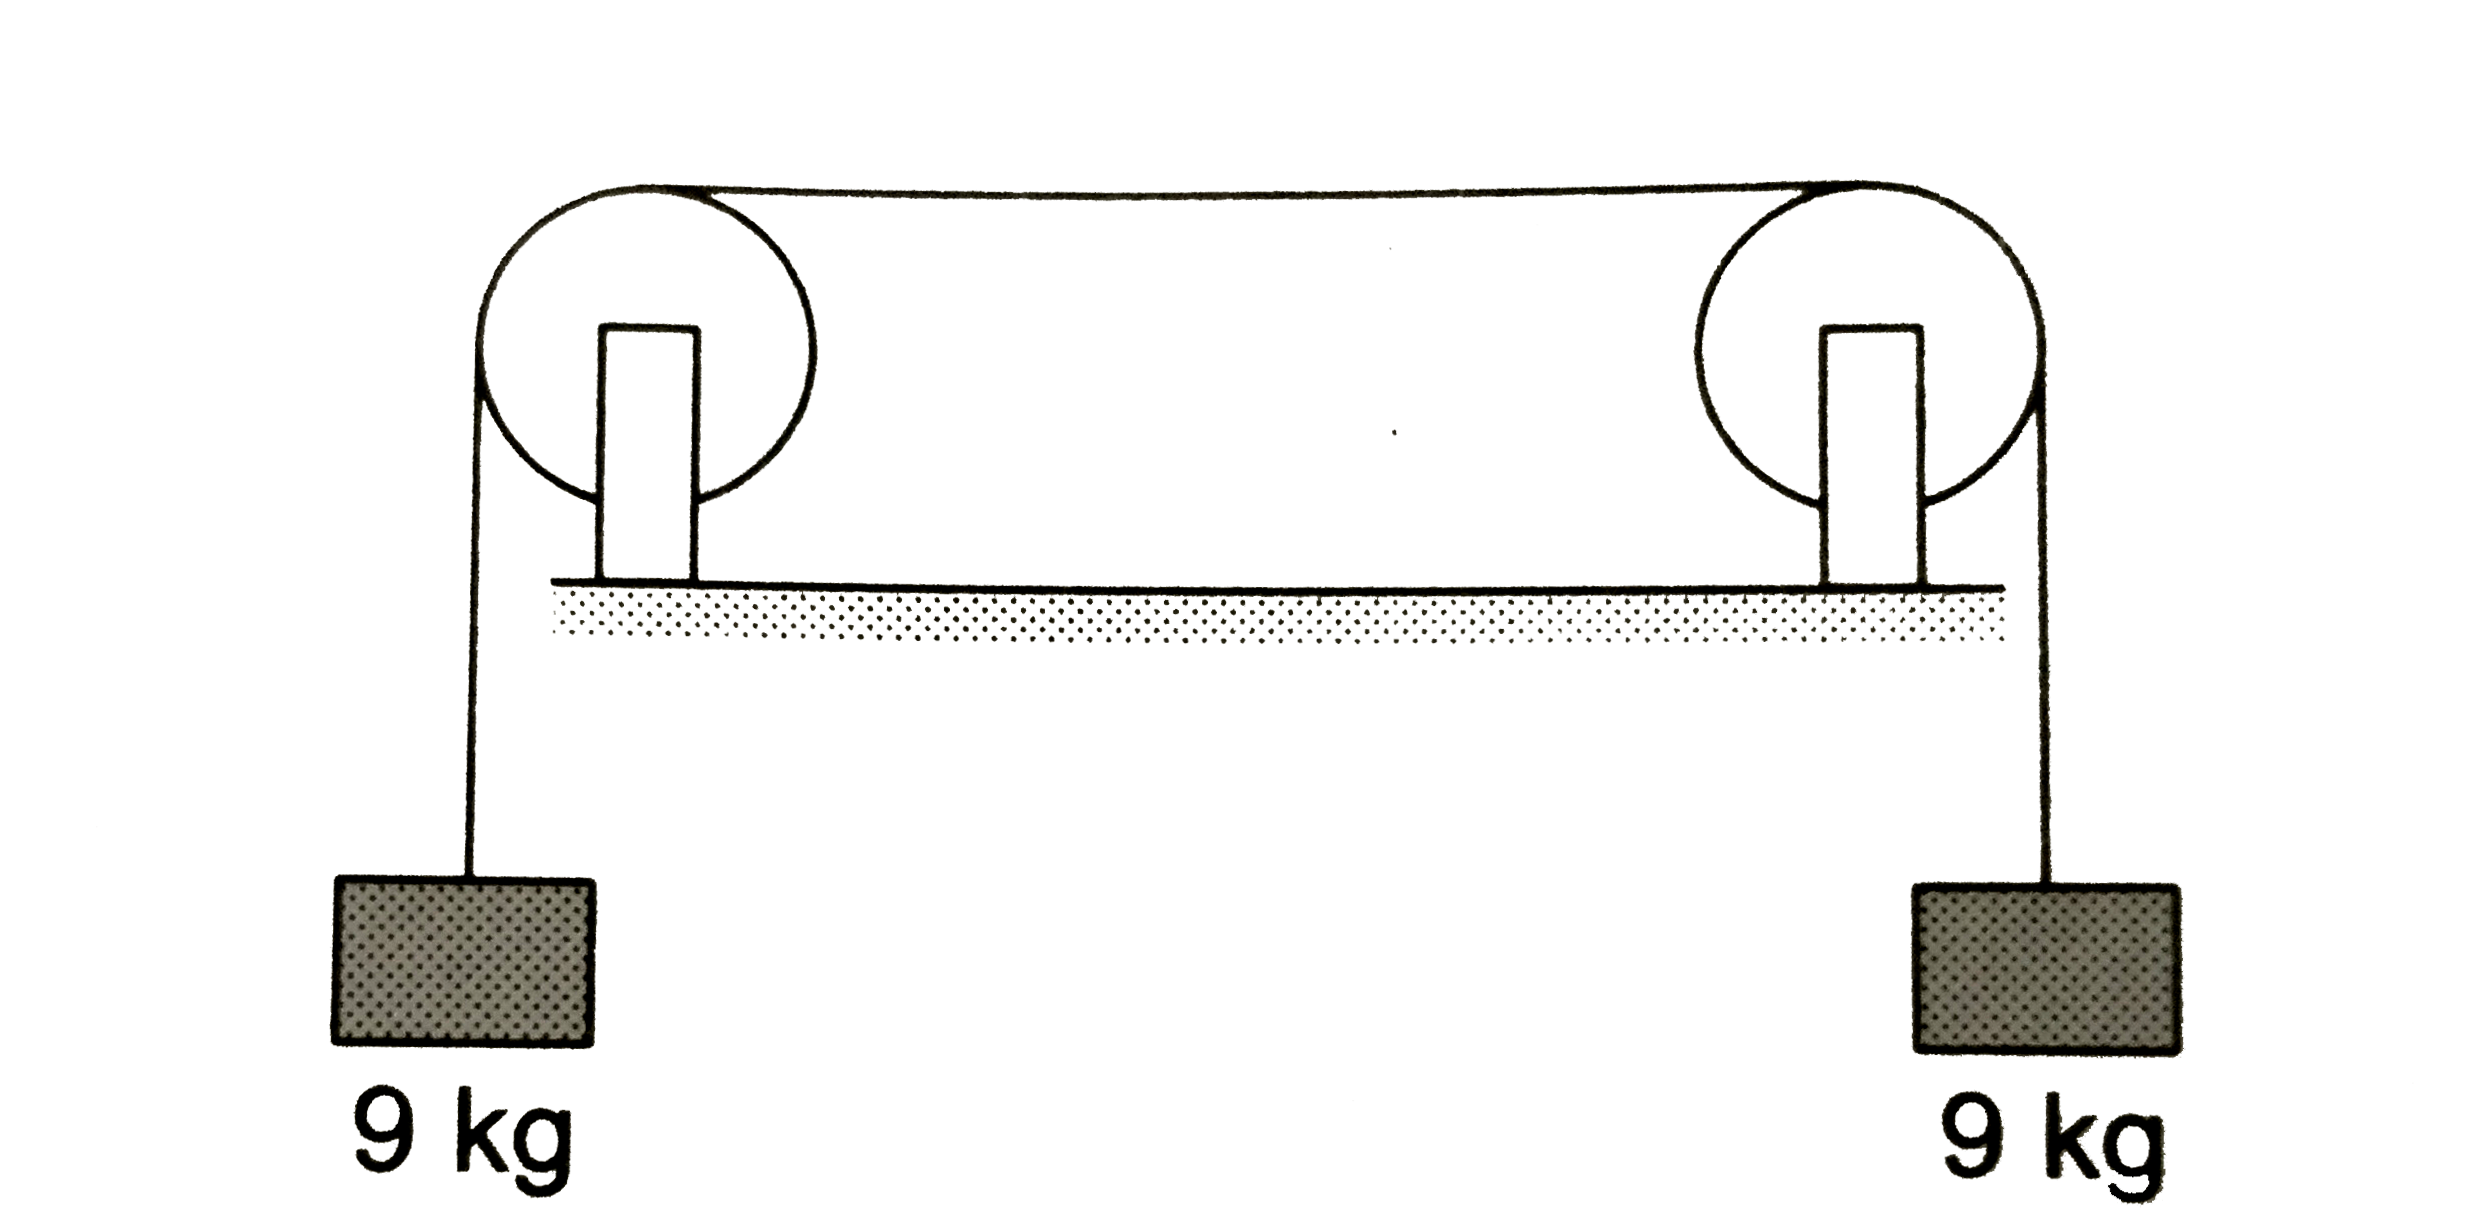 चित्र में दिखाई गई घिरनियों के बीच तार की लंबाई 1.5 m  है तथा इसका द्रव्यमान 12.0 g है। यदि इस  तार को दो लूपों में कंपित कराया जाए, तो उसकी कंपन आवृत्ति क्या होगी ।